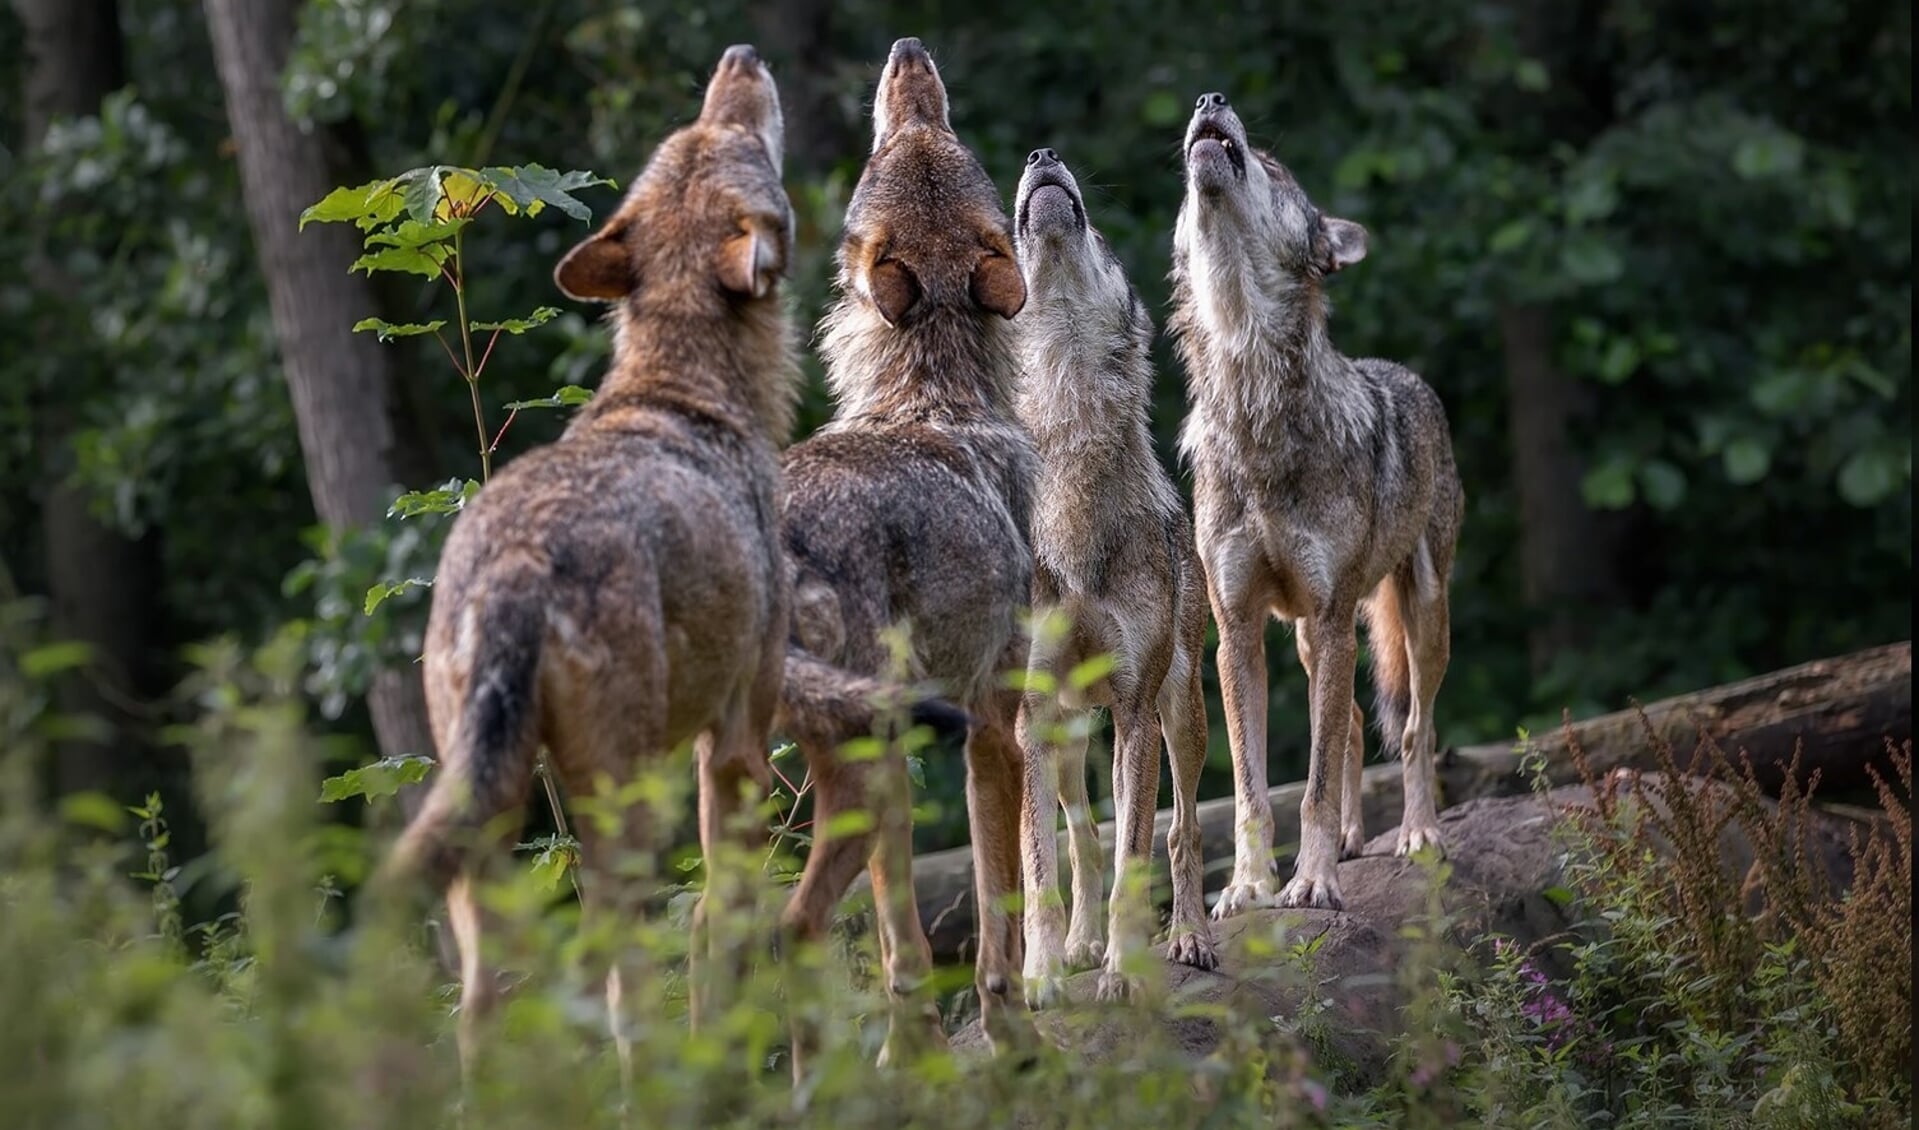 Leer meer over het gedrag van wolven